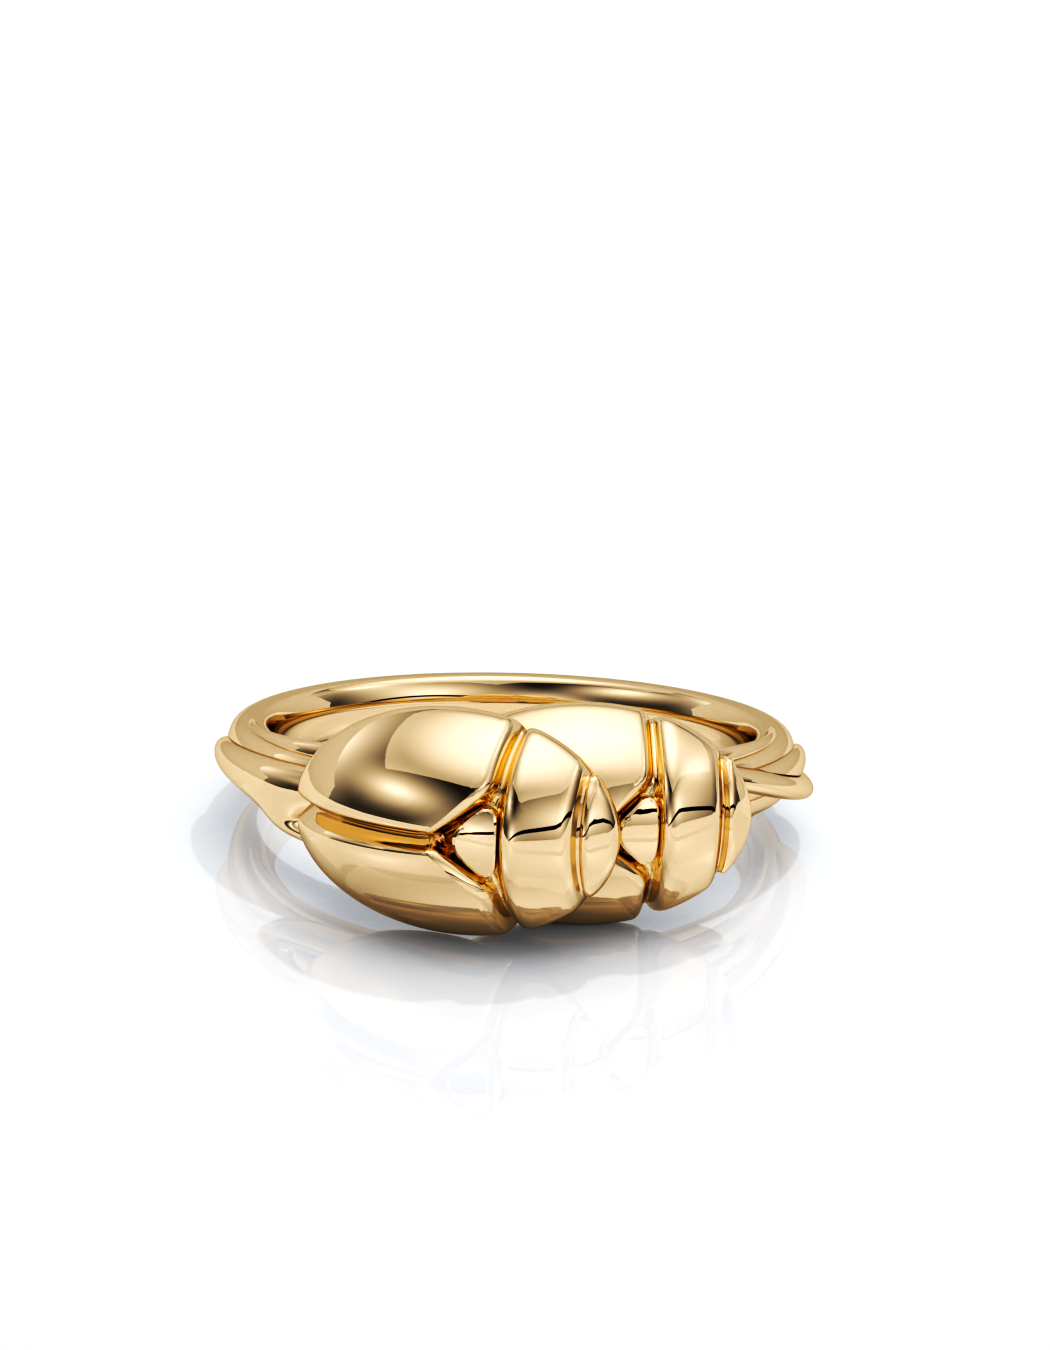 Get Lucky Bug Ring 14k / 18k Gold